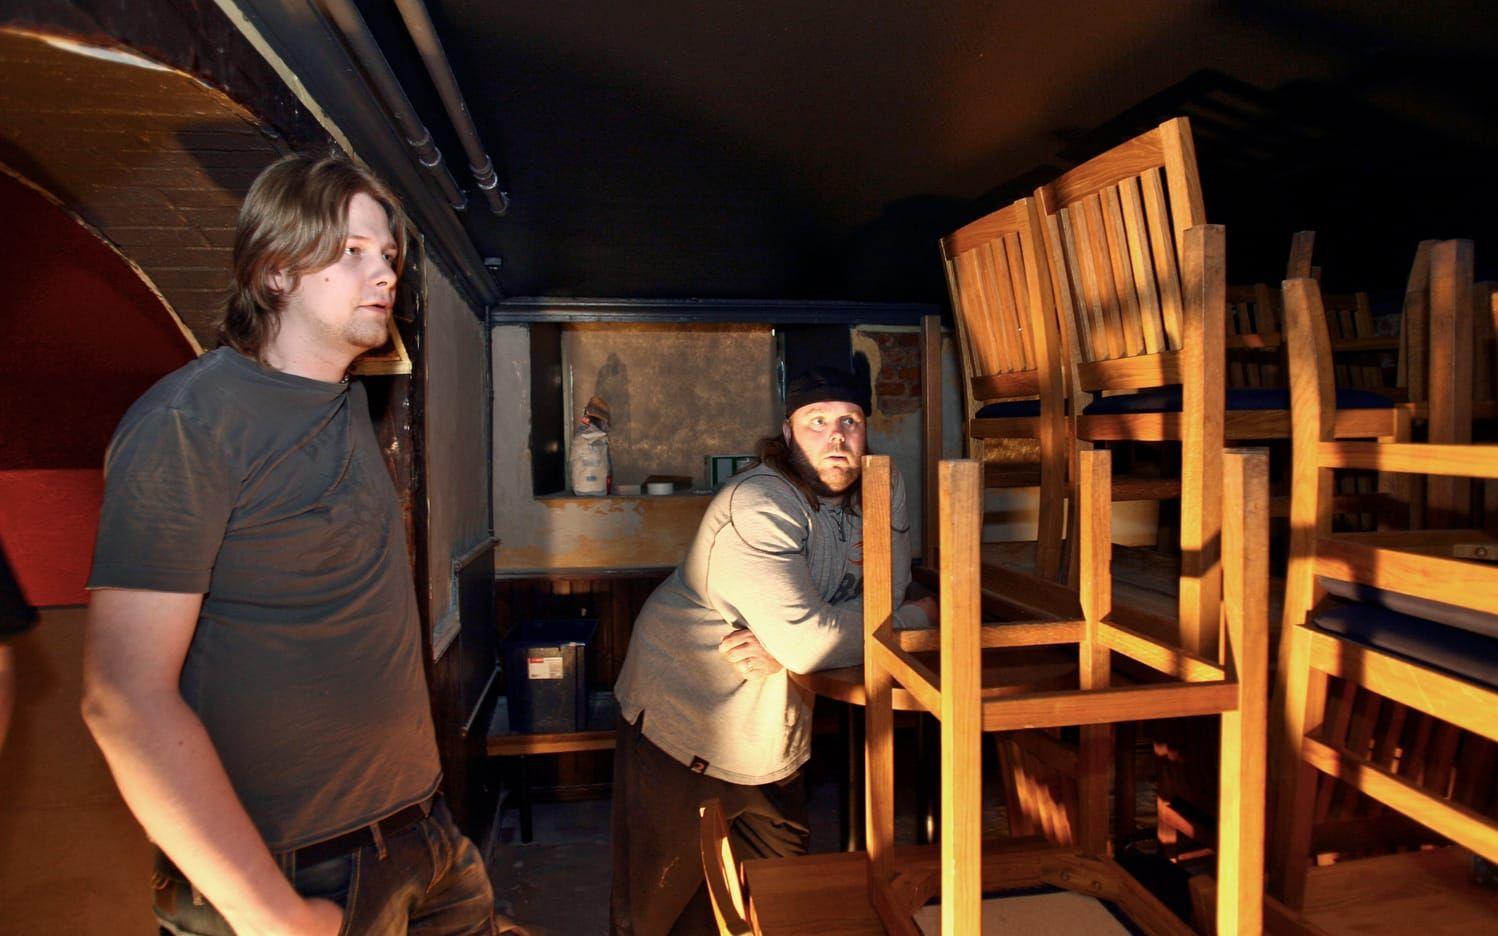 Byggjobb. Peter Malm och Fredrik Eriksson slet hårt inför premiären i juli 2007. Bild. Dragan Mitrovic